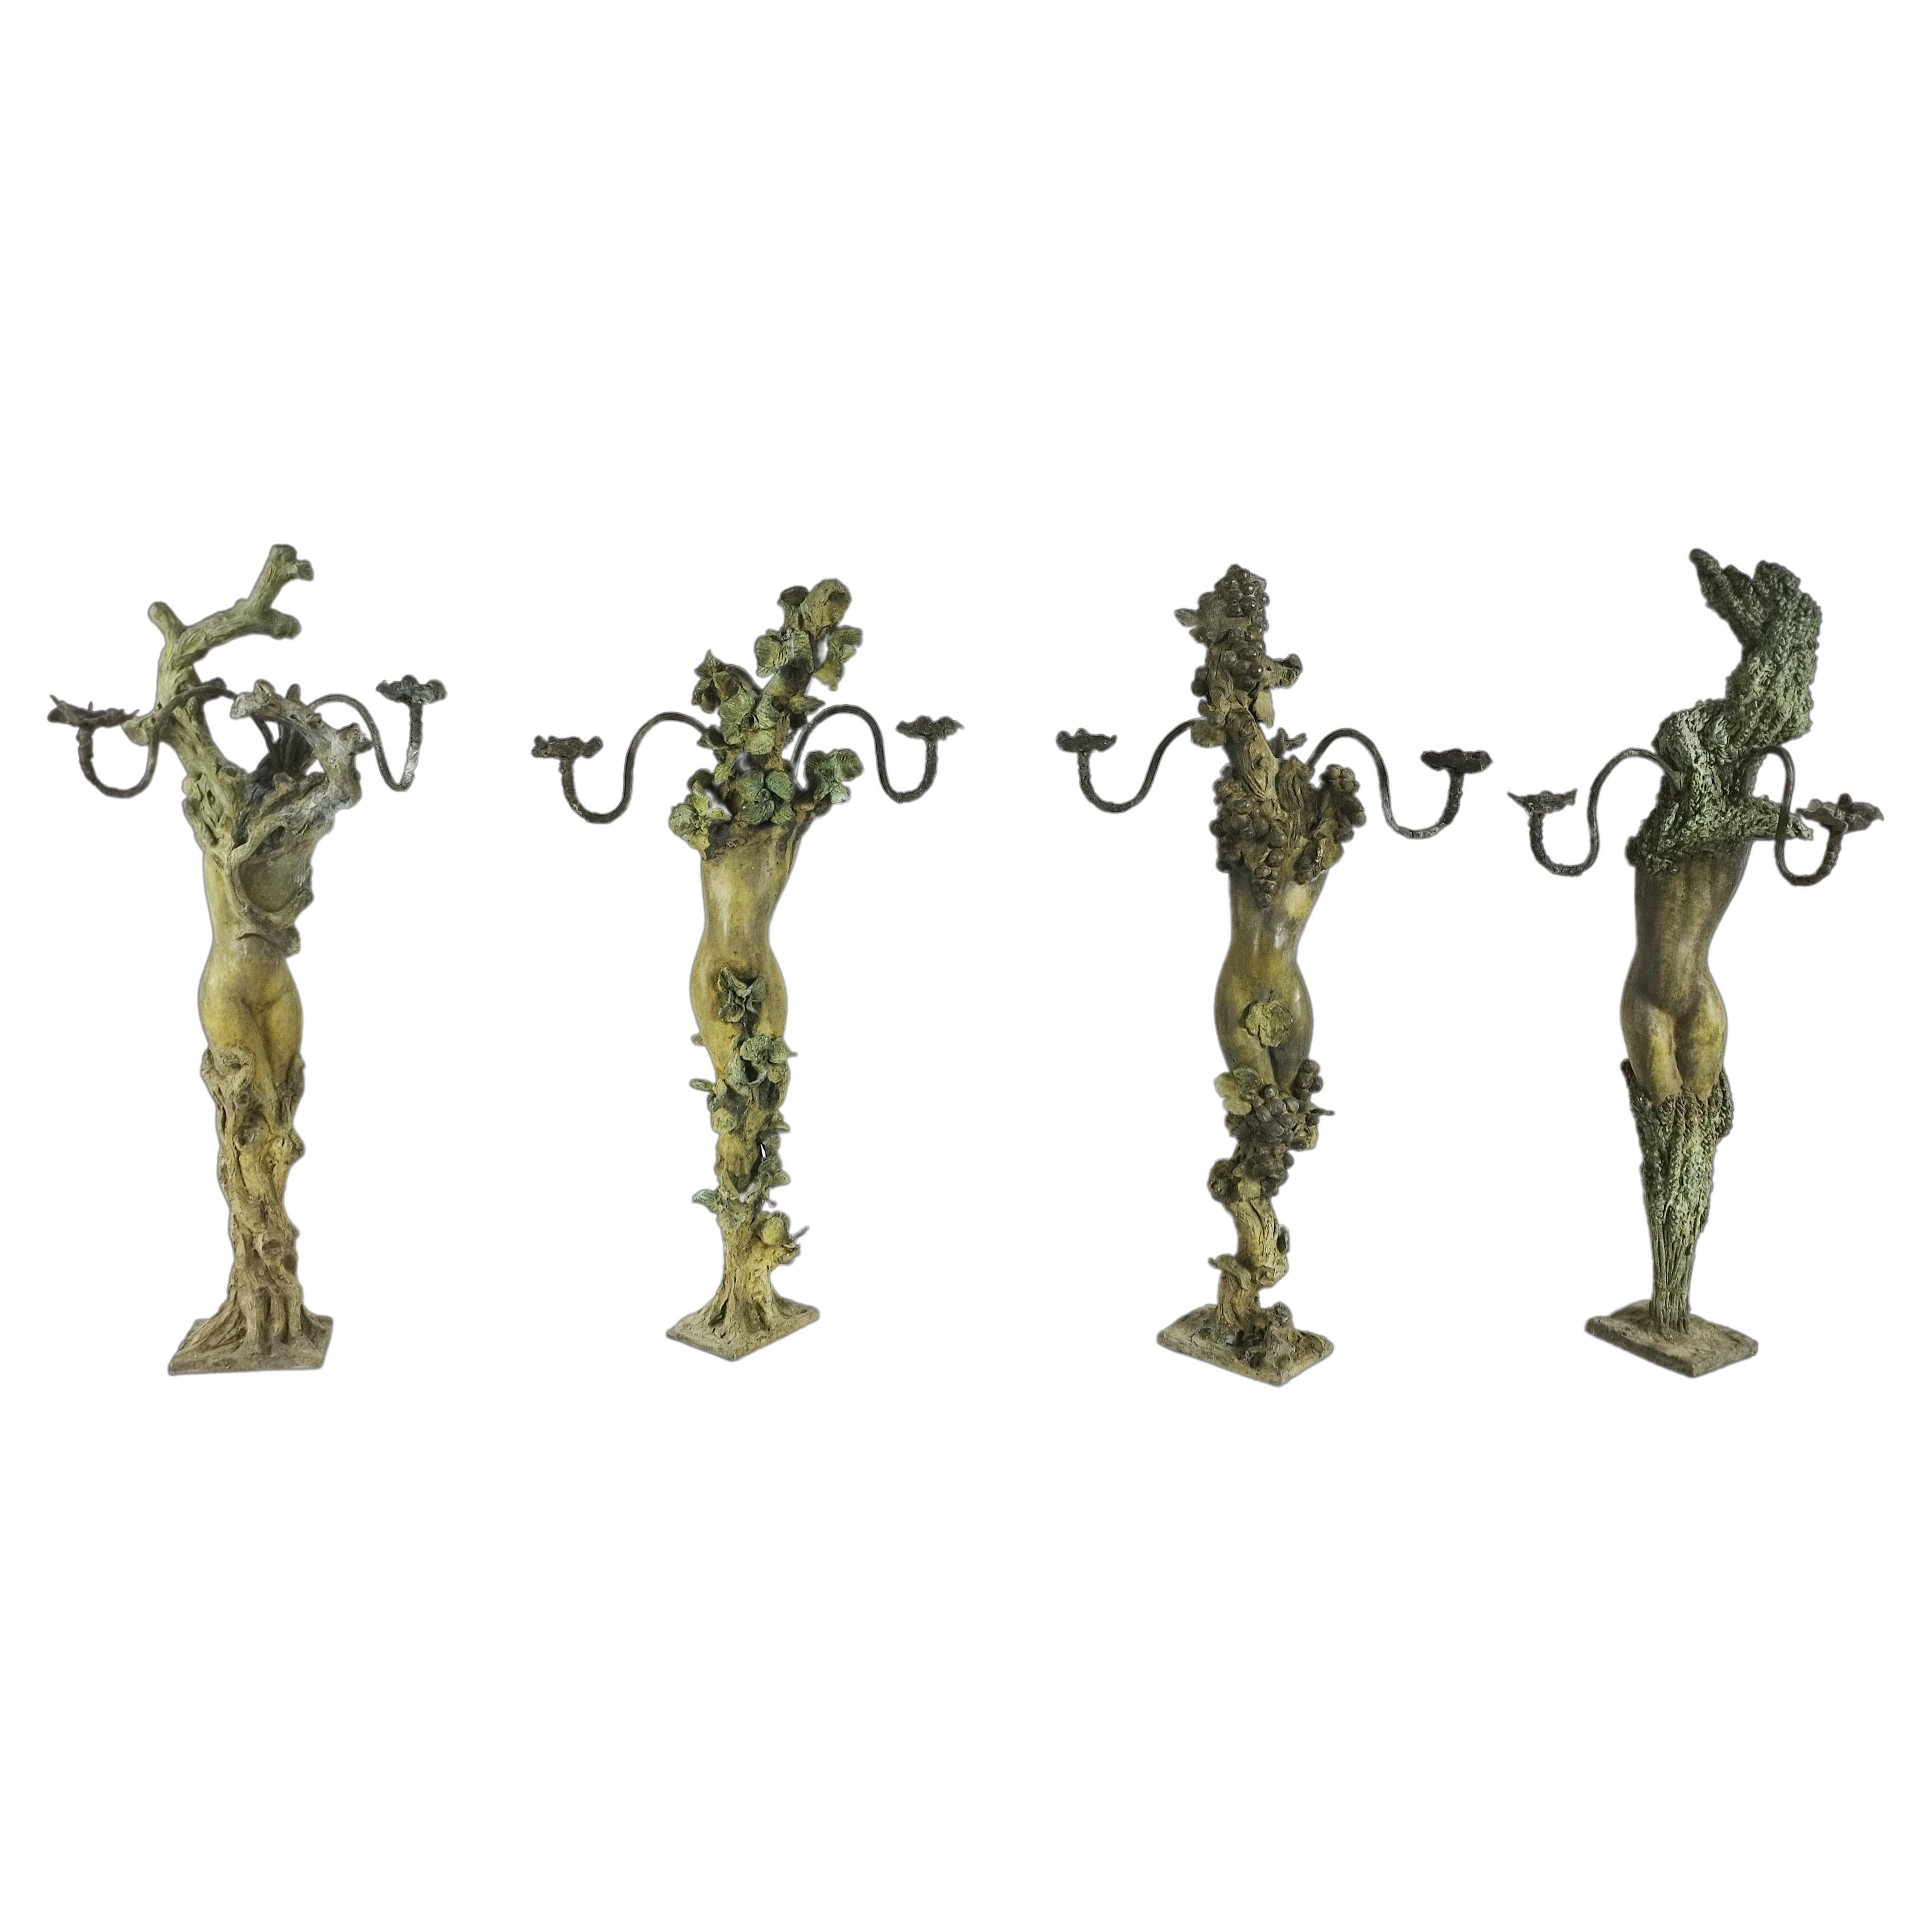 Femme quatre saisons en bronze (4 modèles) de Patrick LAROCHE Sculptor Designer 